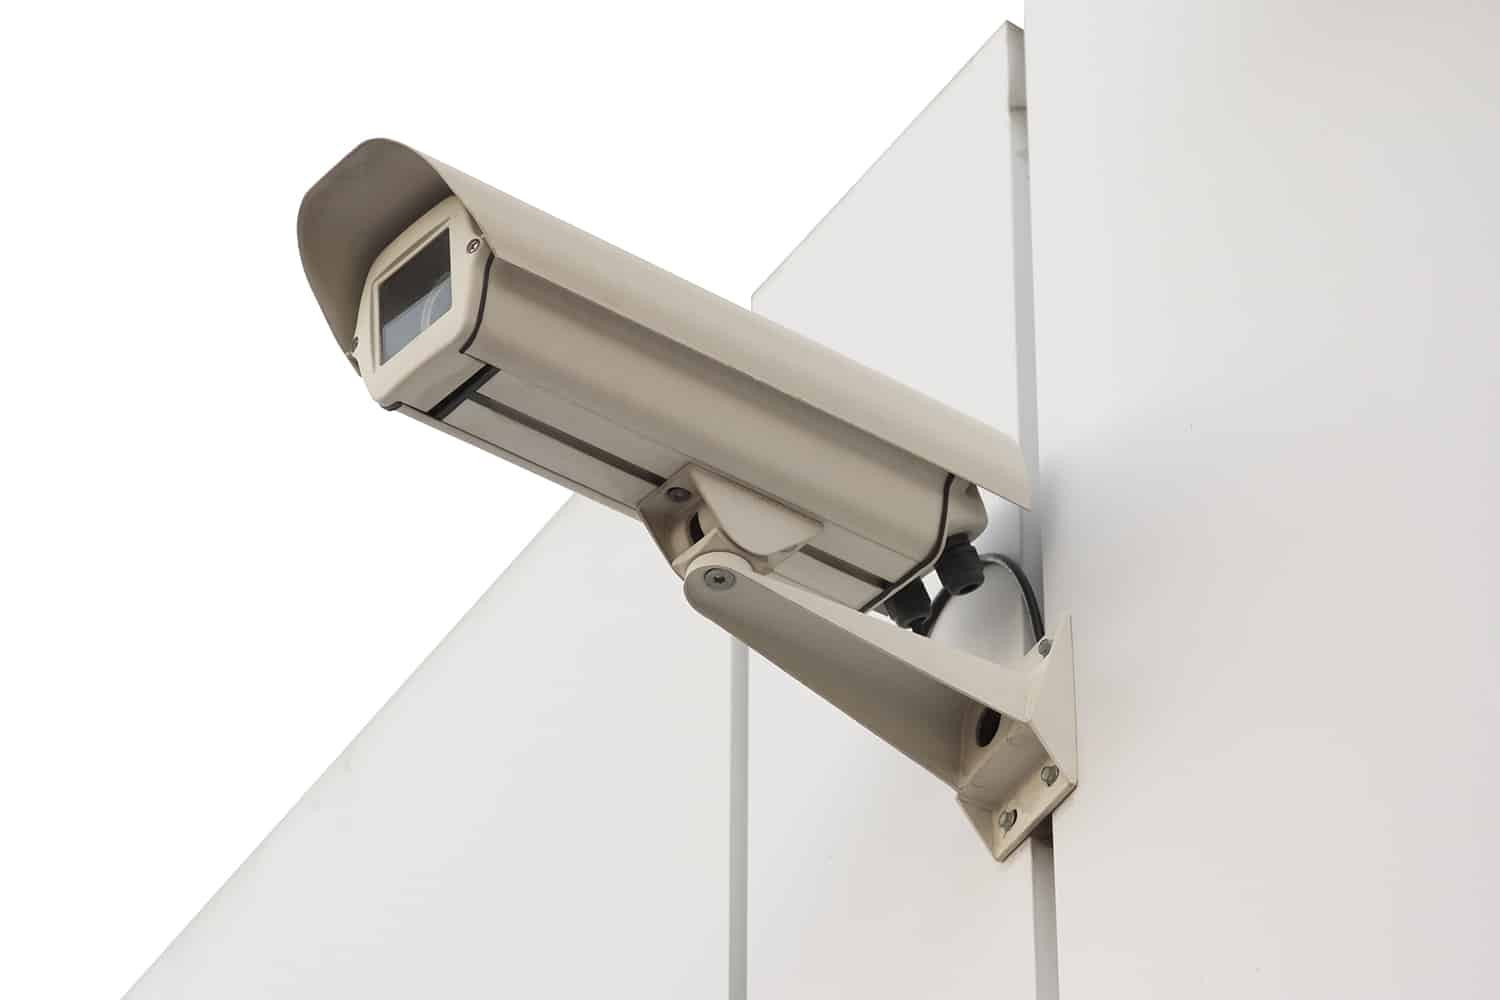 Instalación y reparación de cámaras de videovigilancia CCTV en Sabadell